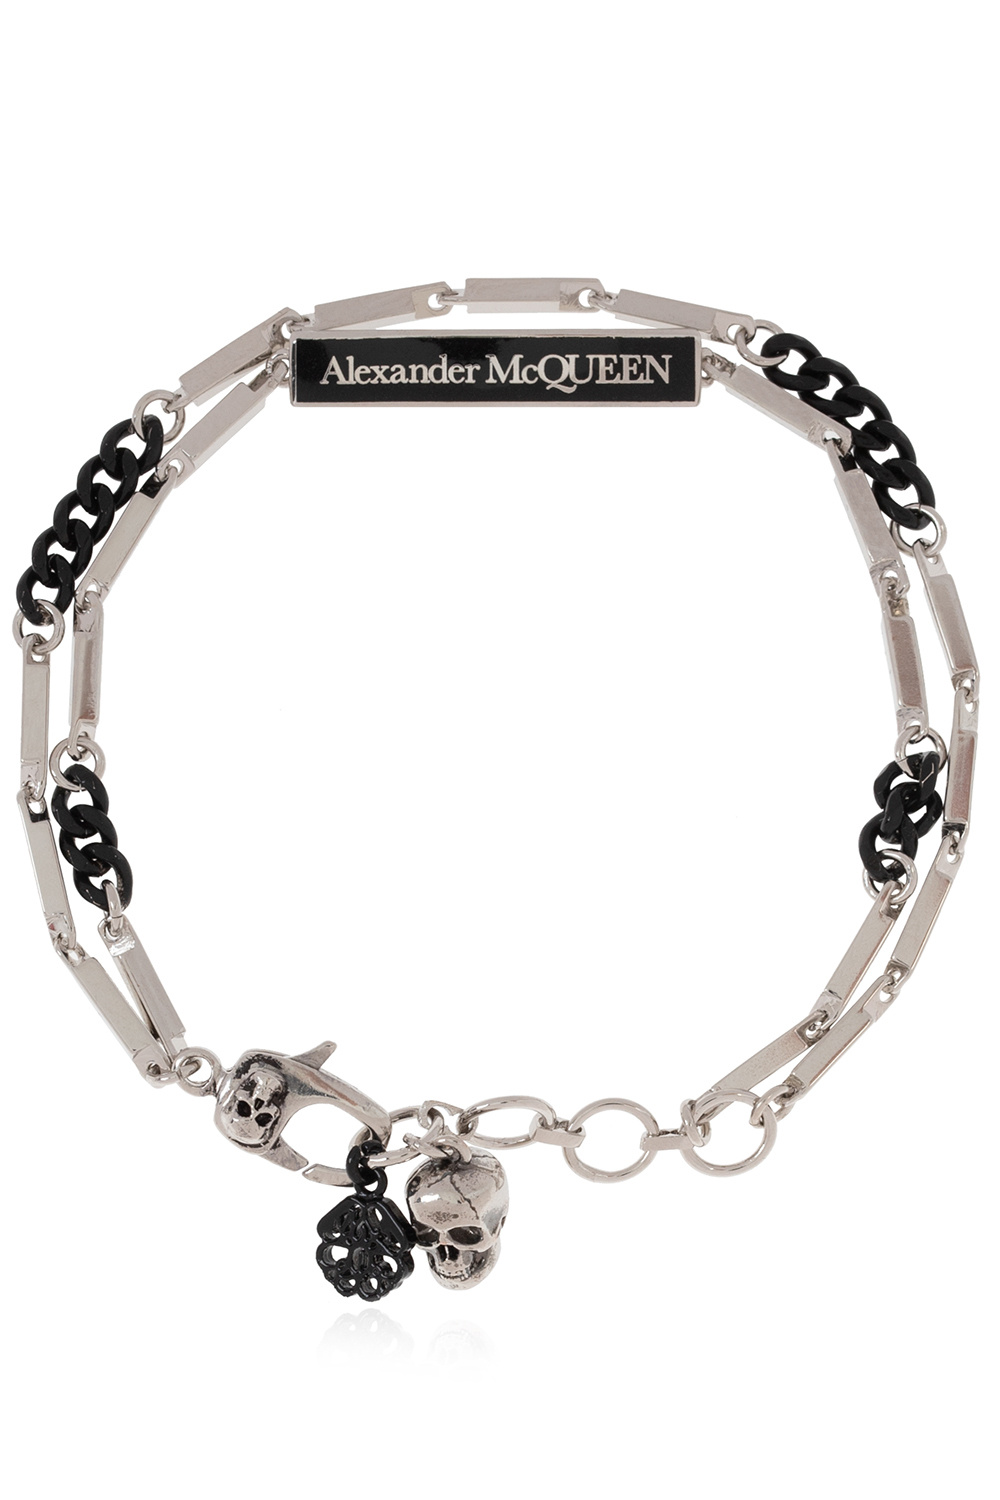 Alexander McQueen Alexander McQueen crystal embellished double-finger ring